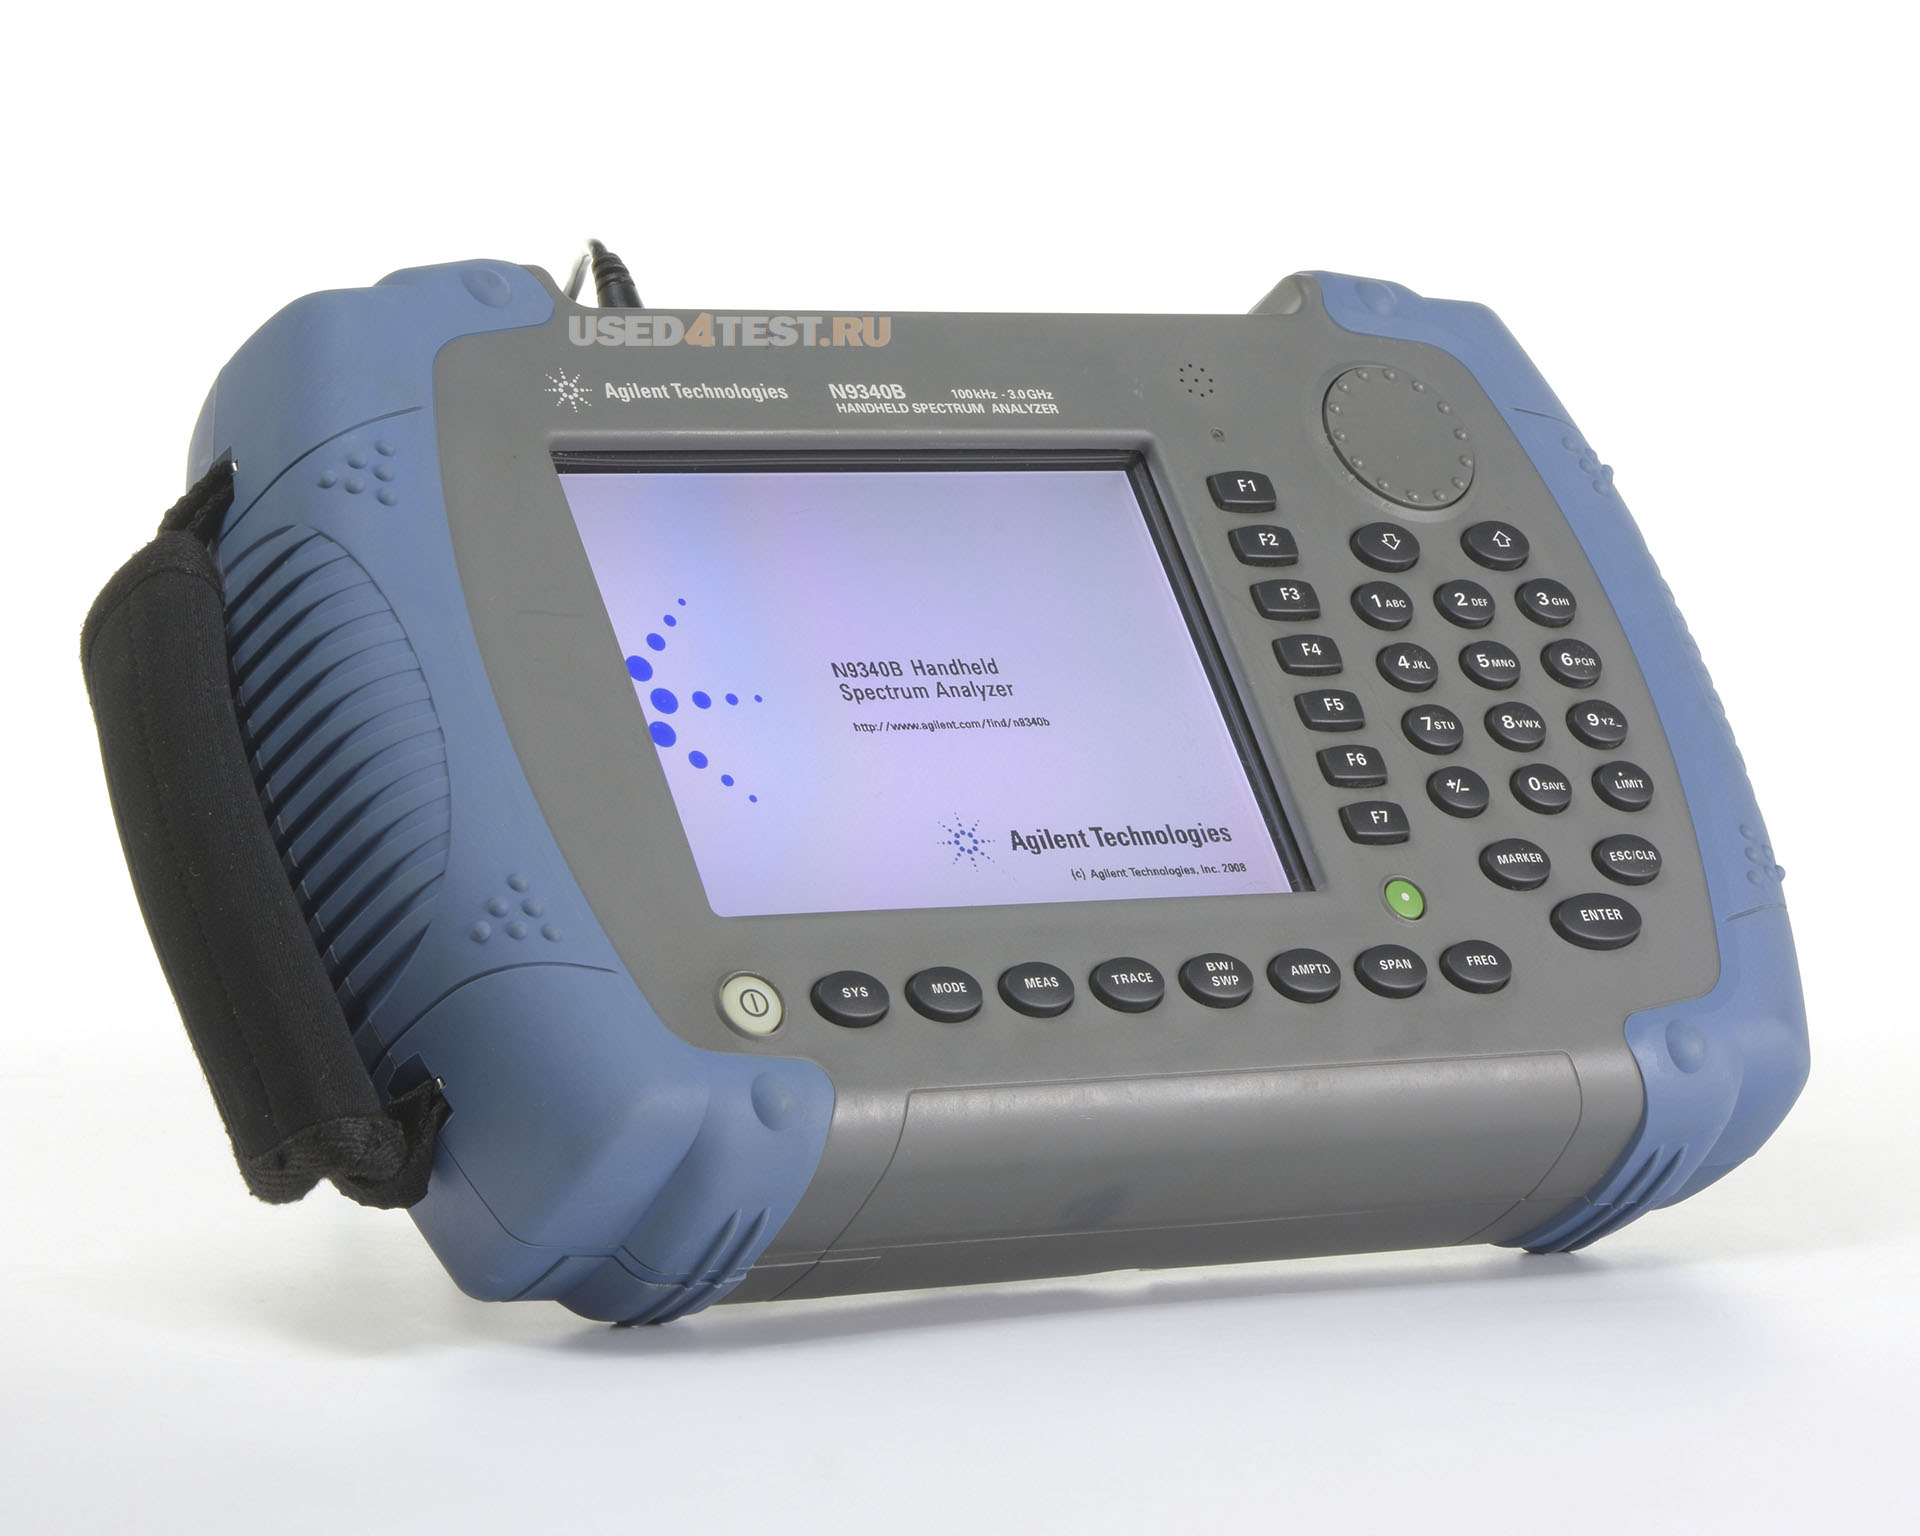 Анализатор спектра Agilent N9340Bс диапазоном от 100 кГц до 3 ГГц
 Стоимость указана в Рублях DDP Москва по безналичному расчету включая НДС 20%
